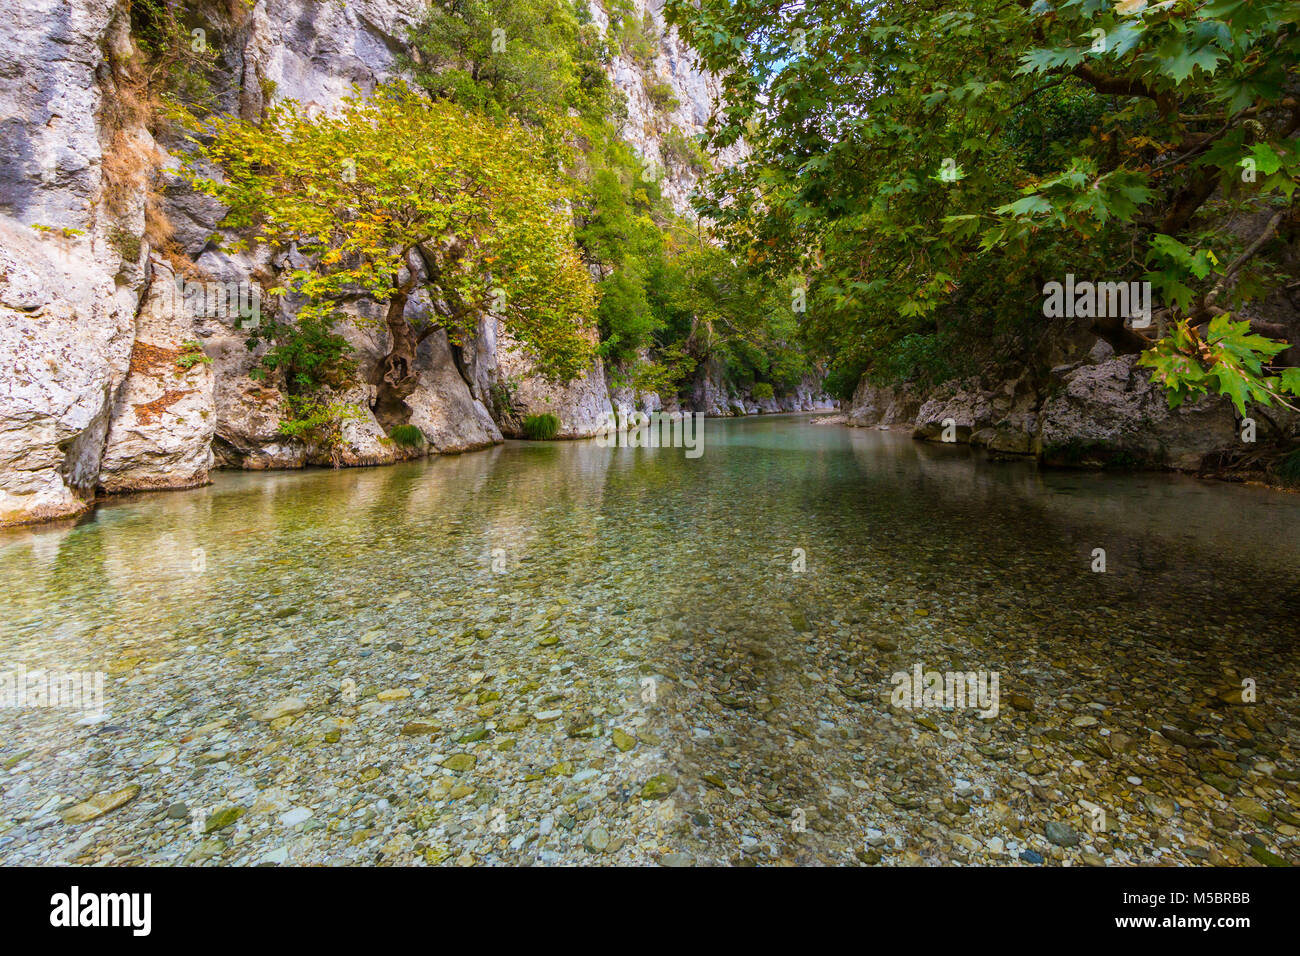 Alberi naturali, Vegetazione, rocce al fiume Acheronte in Grecia Foto Stock